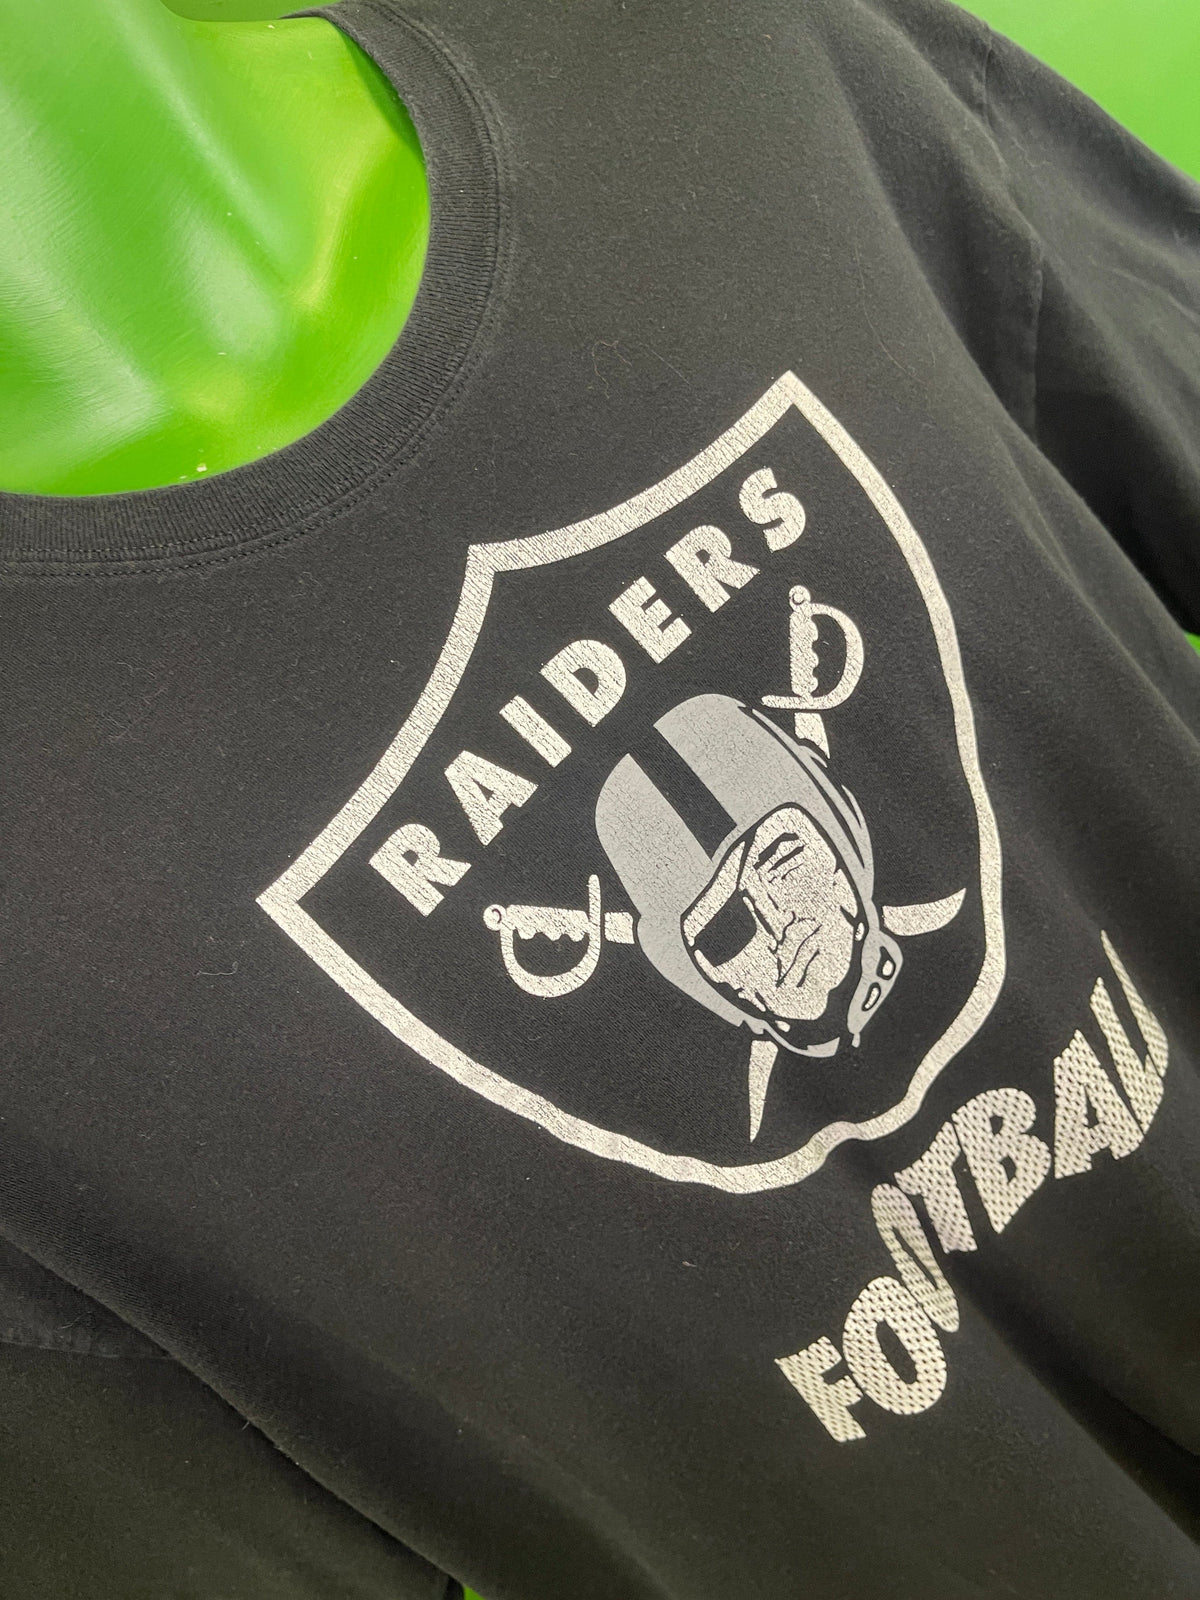 NFL Las Vegas Raiders Nike 100% Cotton T-Shirt Men's X-Large